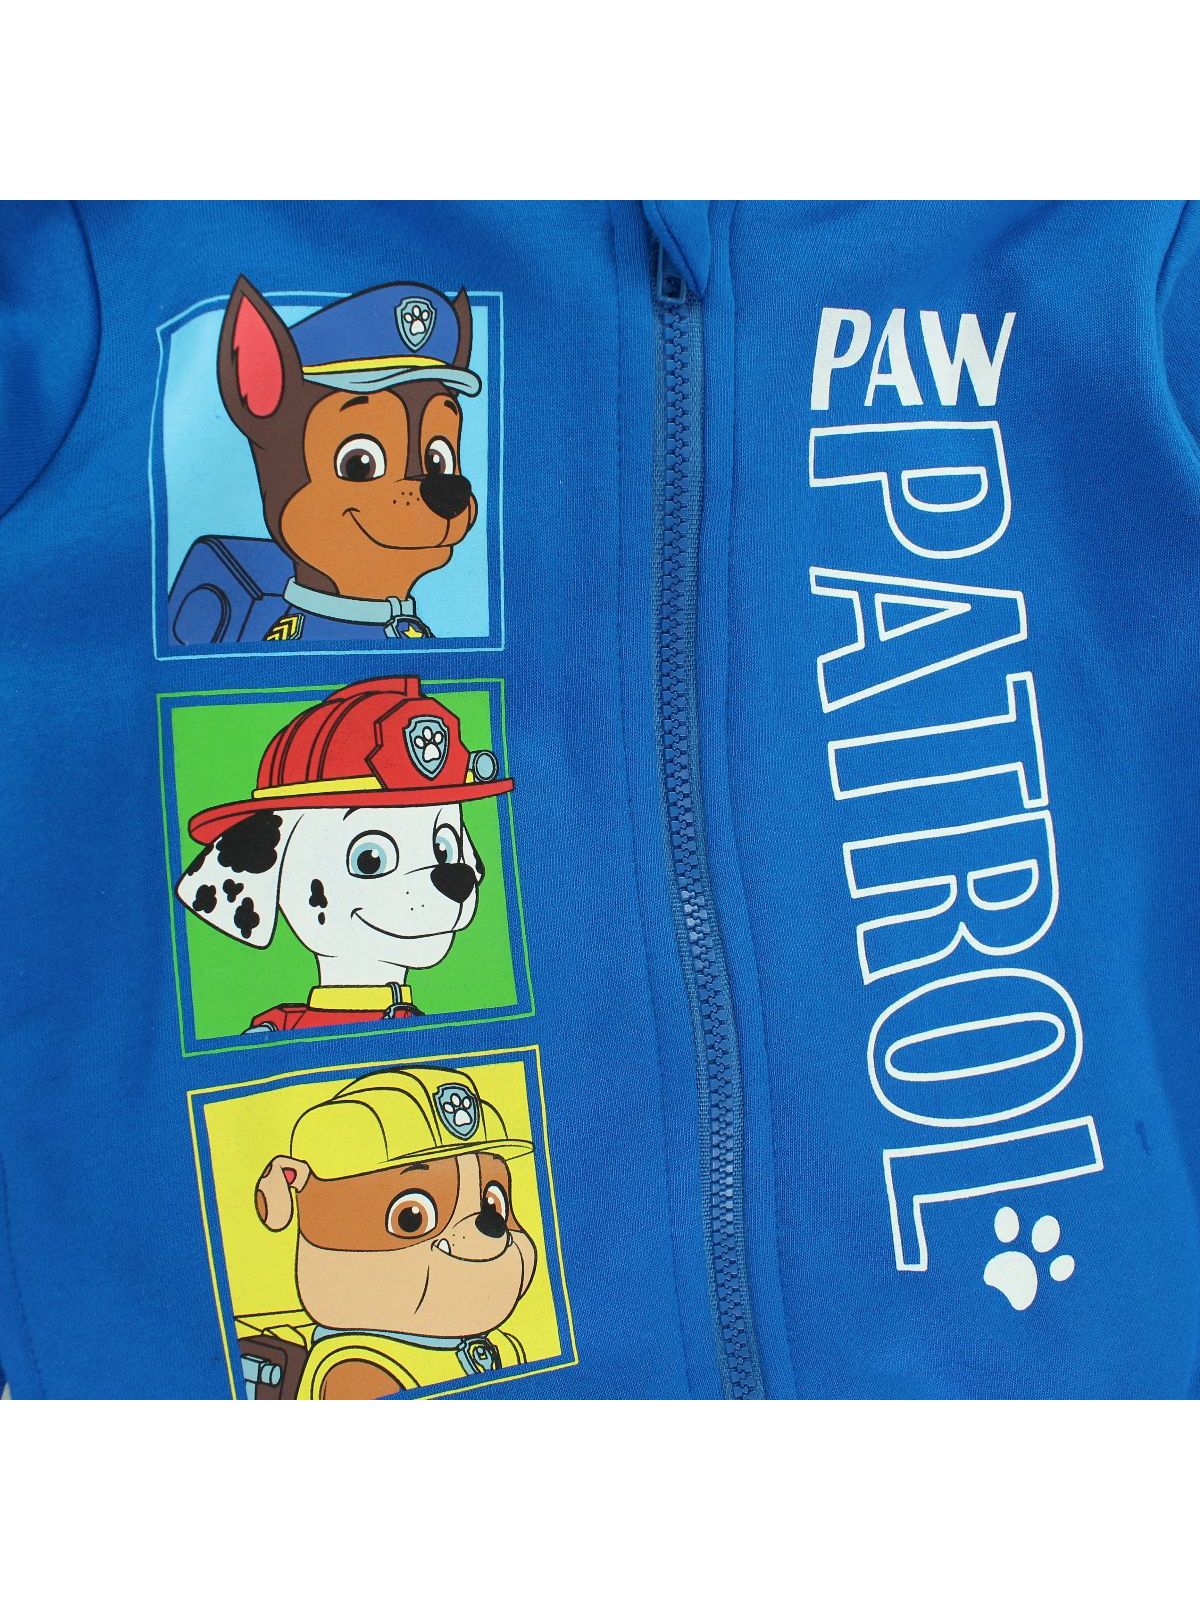 Paw Patrol hooded jacket